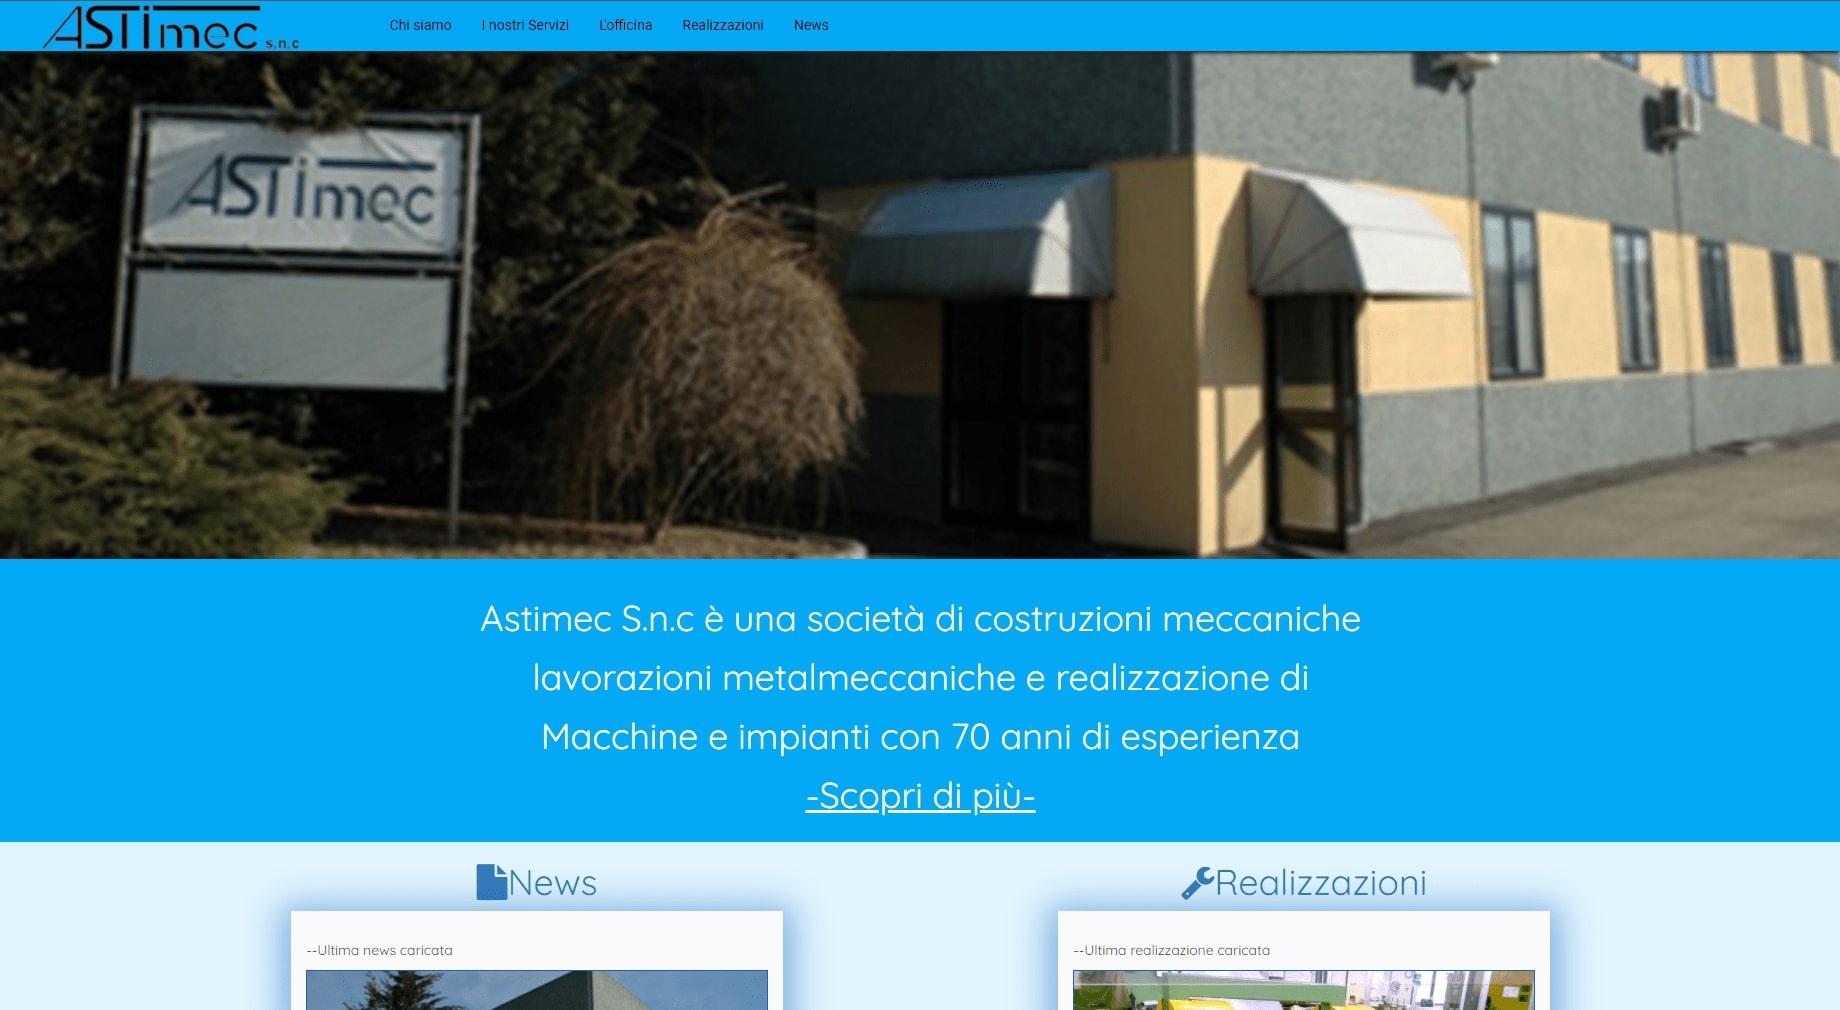 ScreenShot del sito web dell'azienda Astigiana  Astimec S.N.C realizzato da ABCLABS visto da computer